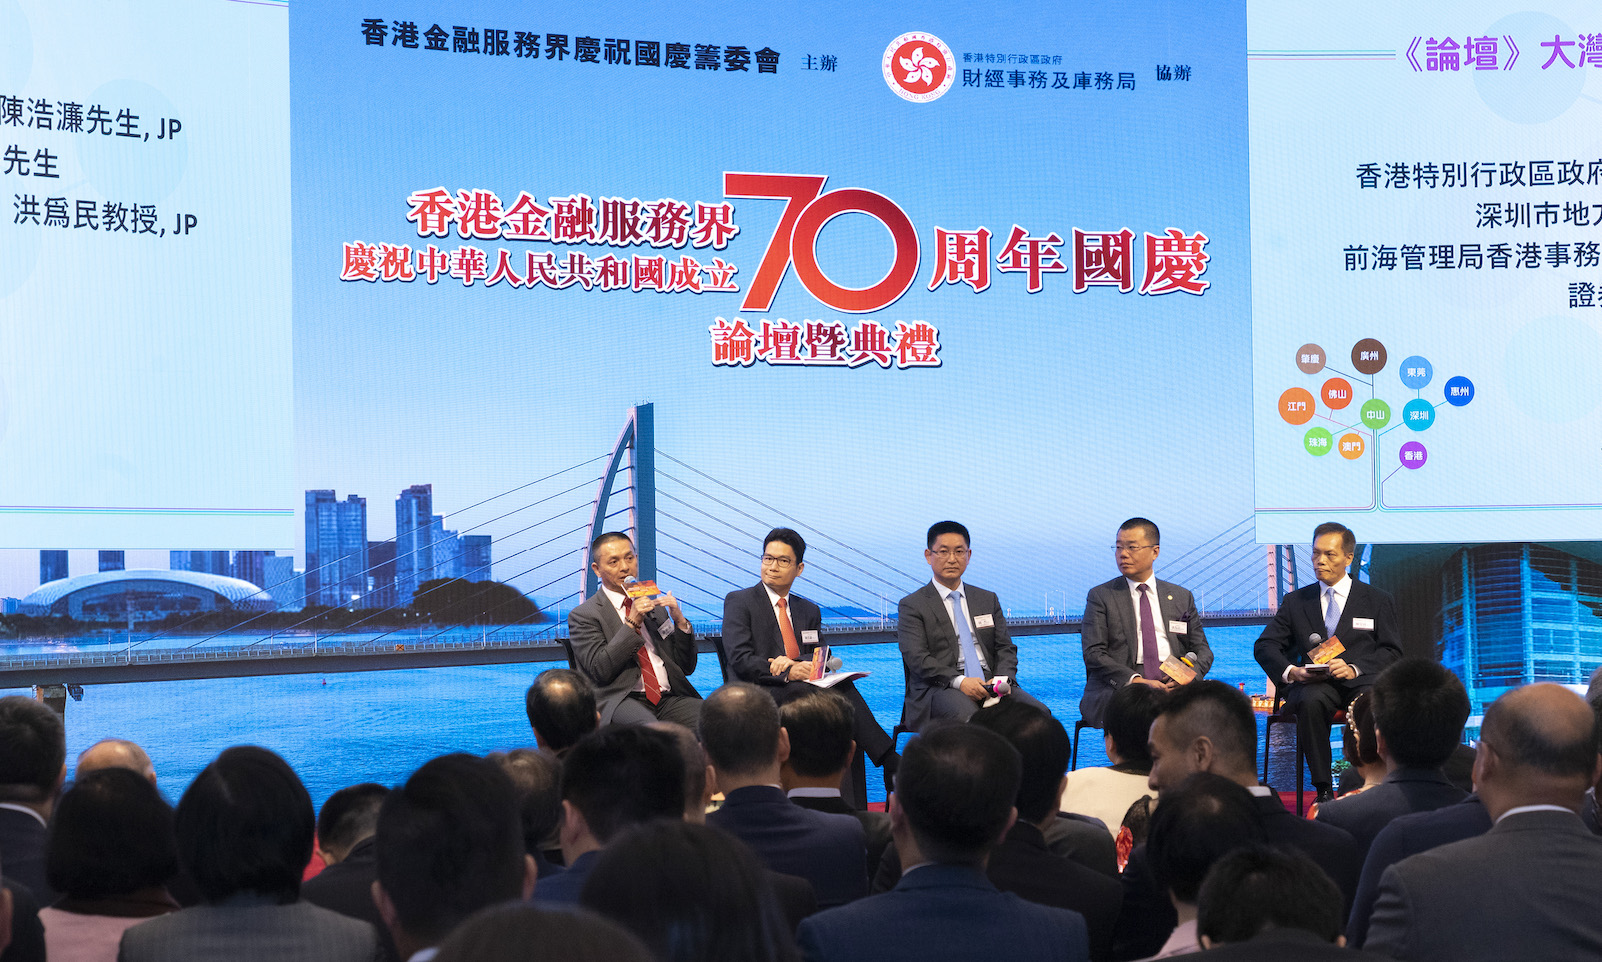 金融服務界慶祝中華人民共和國成立七十周年國慶論壇暨典禮